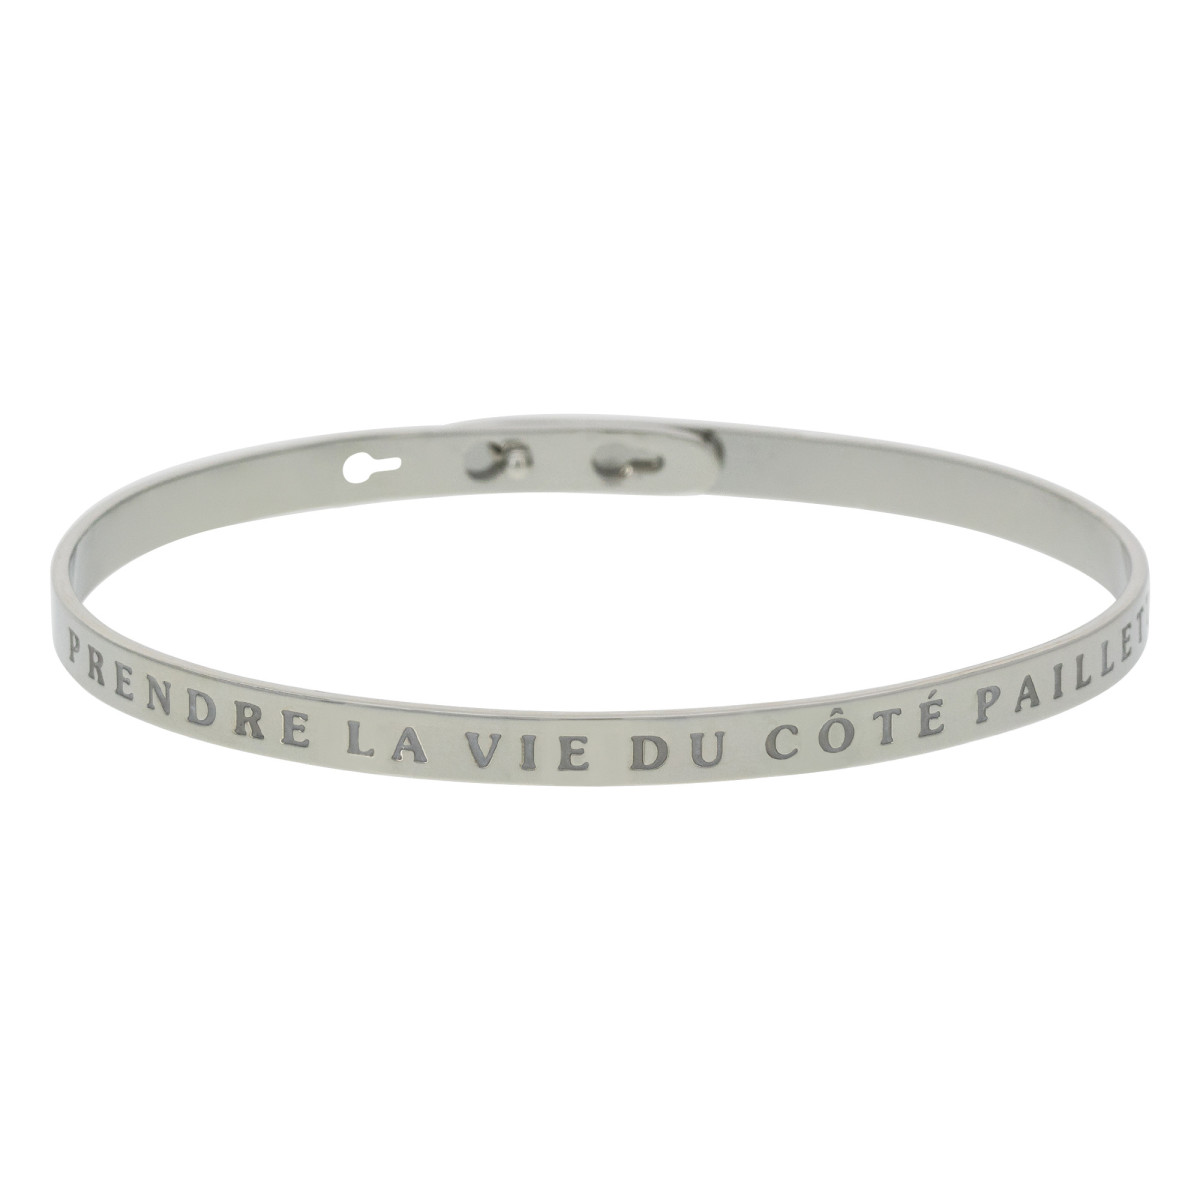 "PRENDRE LA VIE DU COTE PAILLETTE" bracelet jonc argenté à message